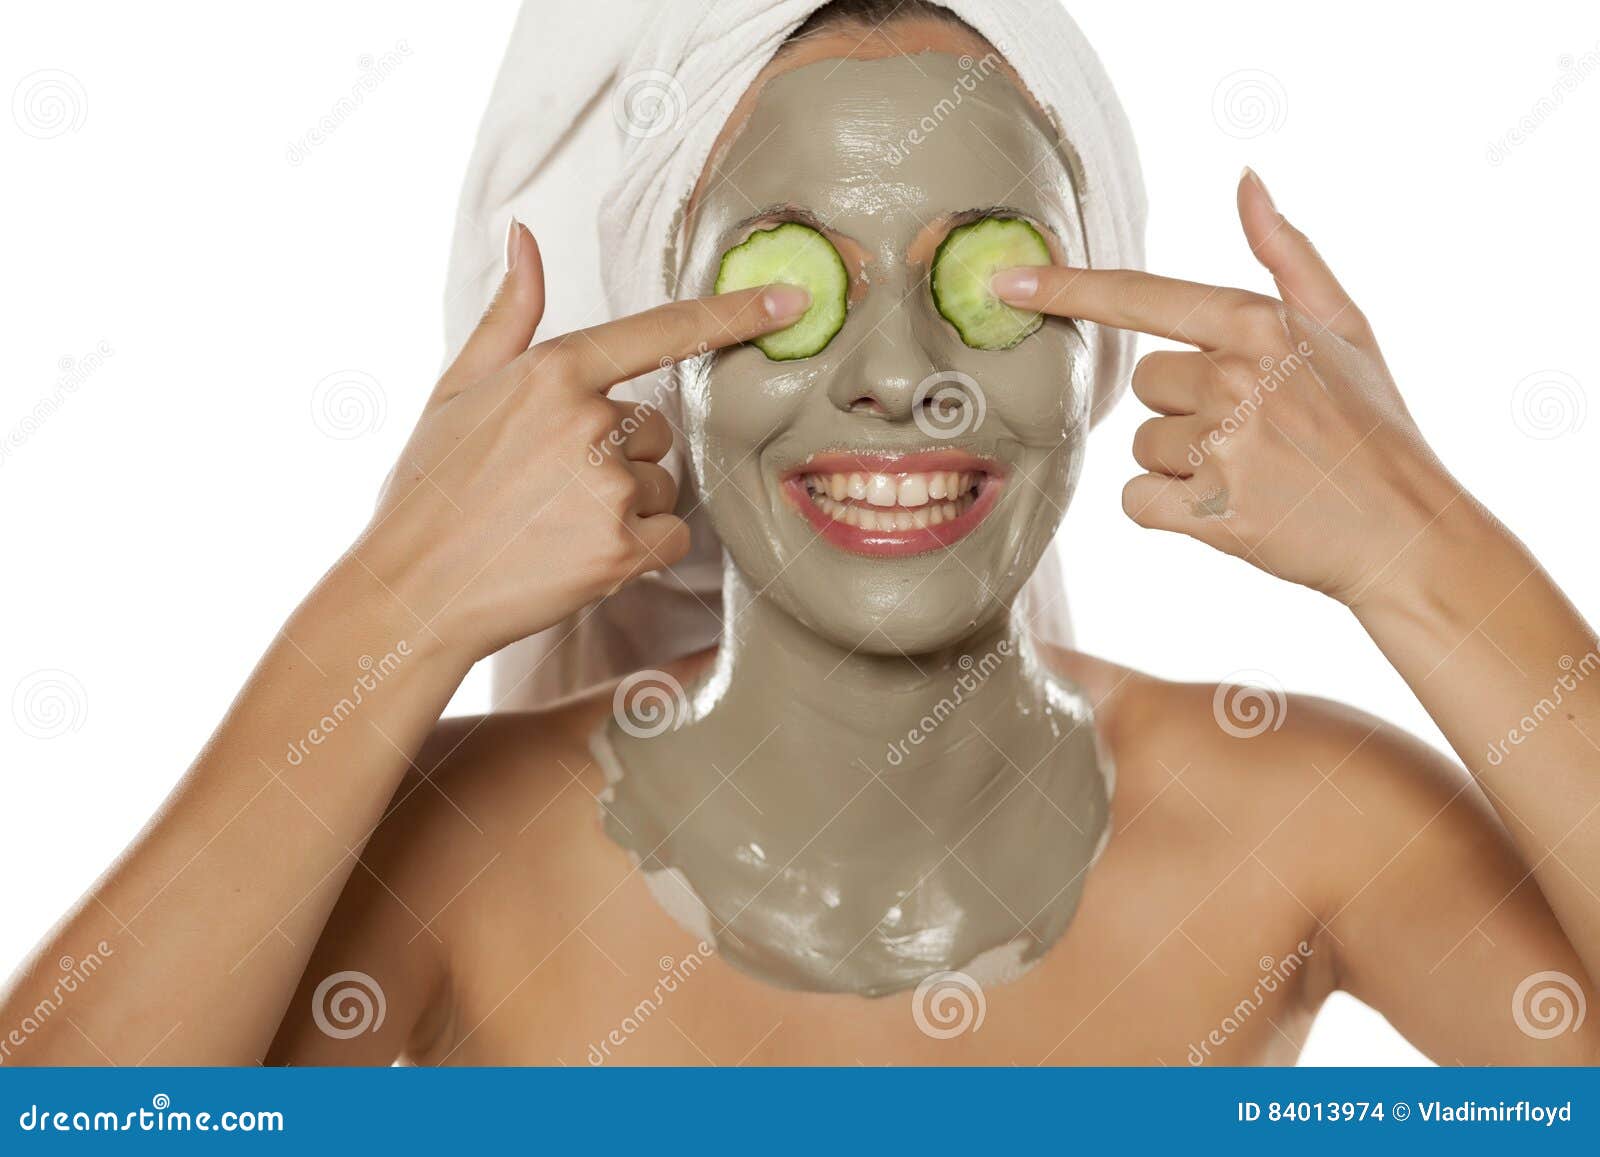 Маска над головой. Девушки с маской на лице и на голове. Девушка в полотенце с маской на лице. Девушка с маской и огурцами на глазах.